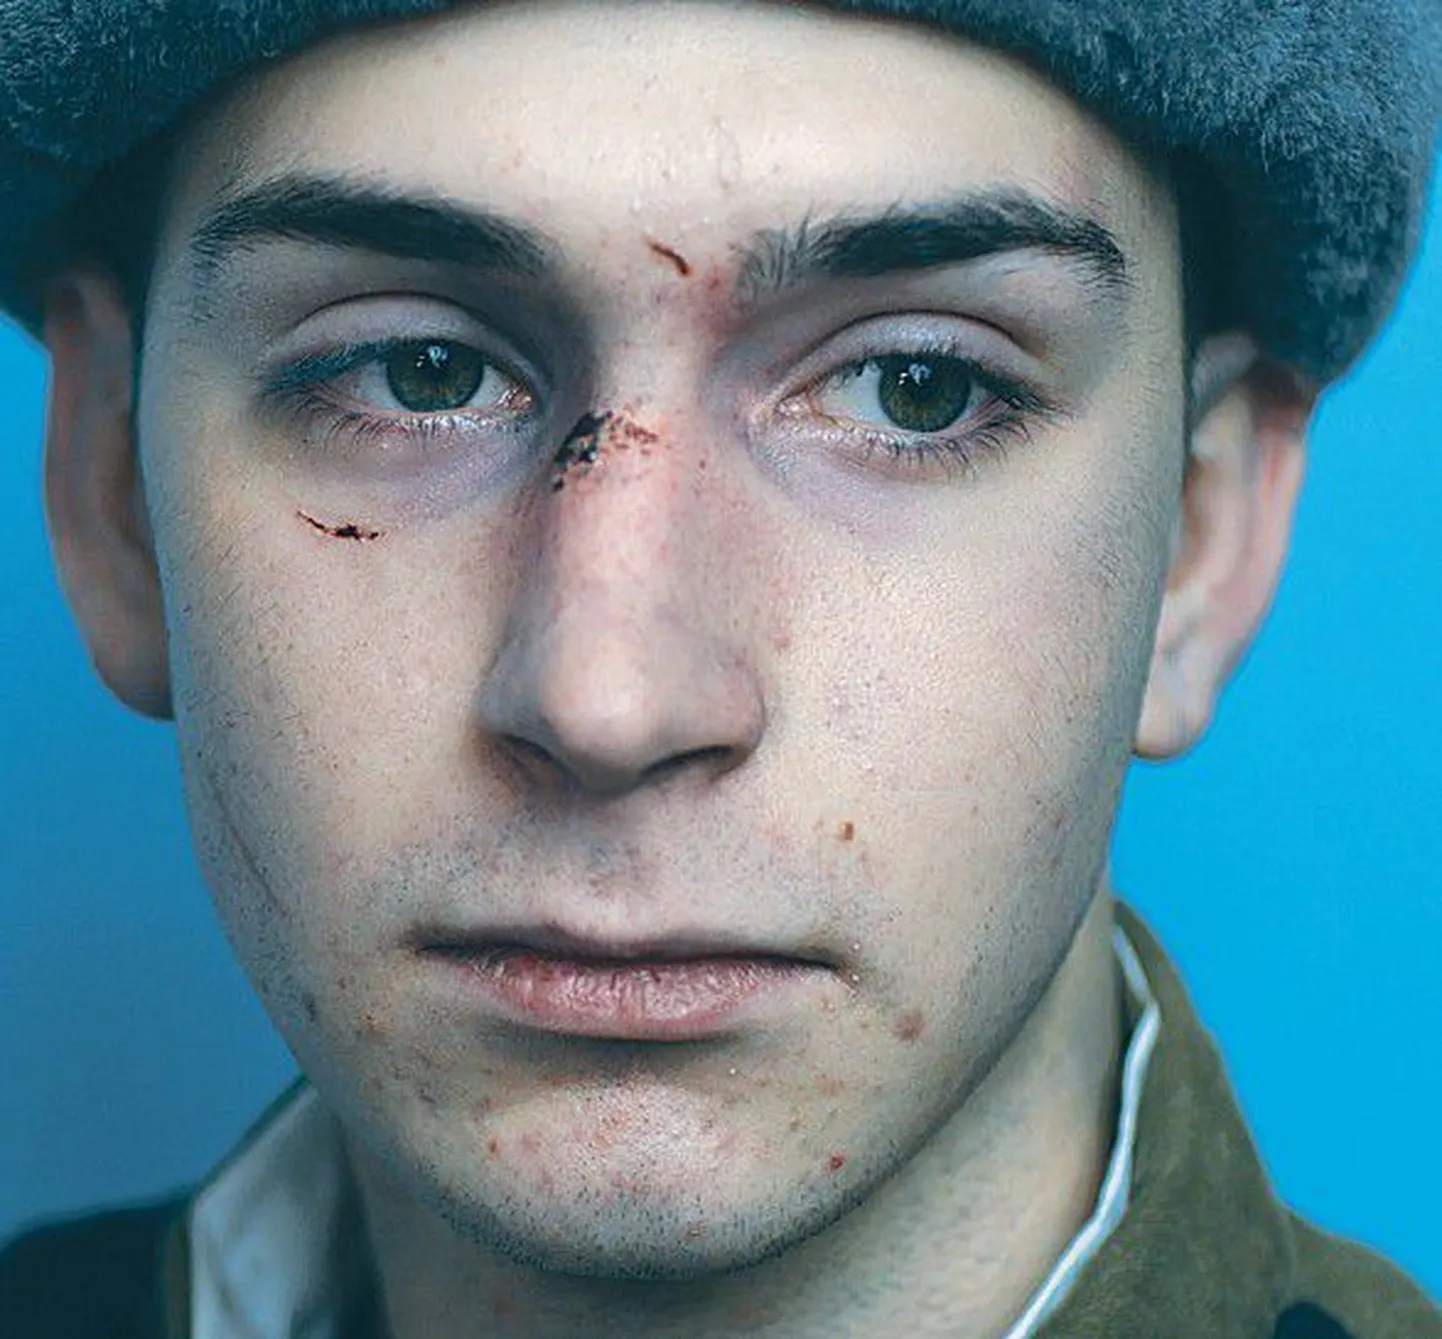 Олег (Дмитрий Соболевский) — тот, из-за которого герой фильма предпринимает ритуальный путь в надежде освободиться от мучительных воспоминаний.